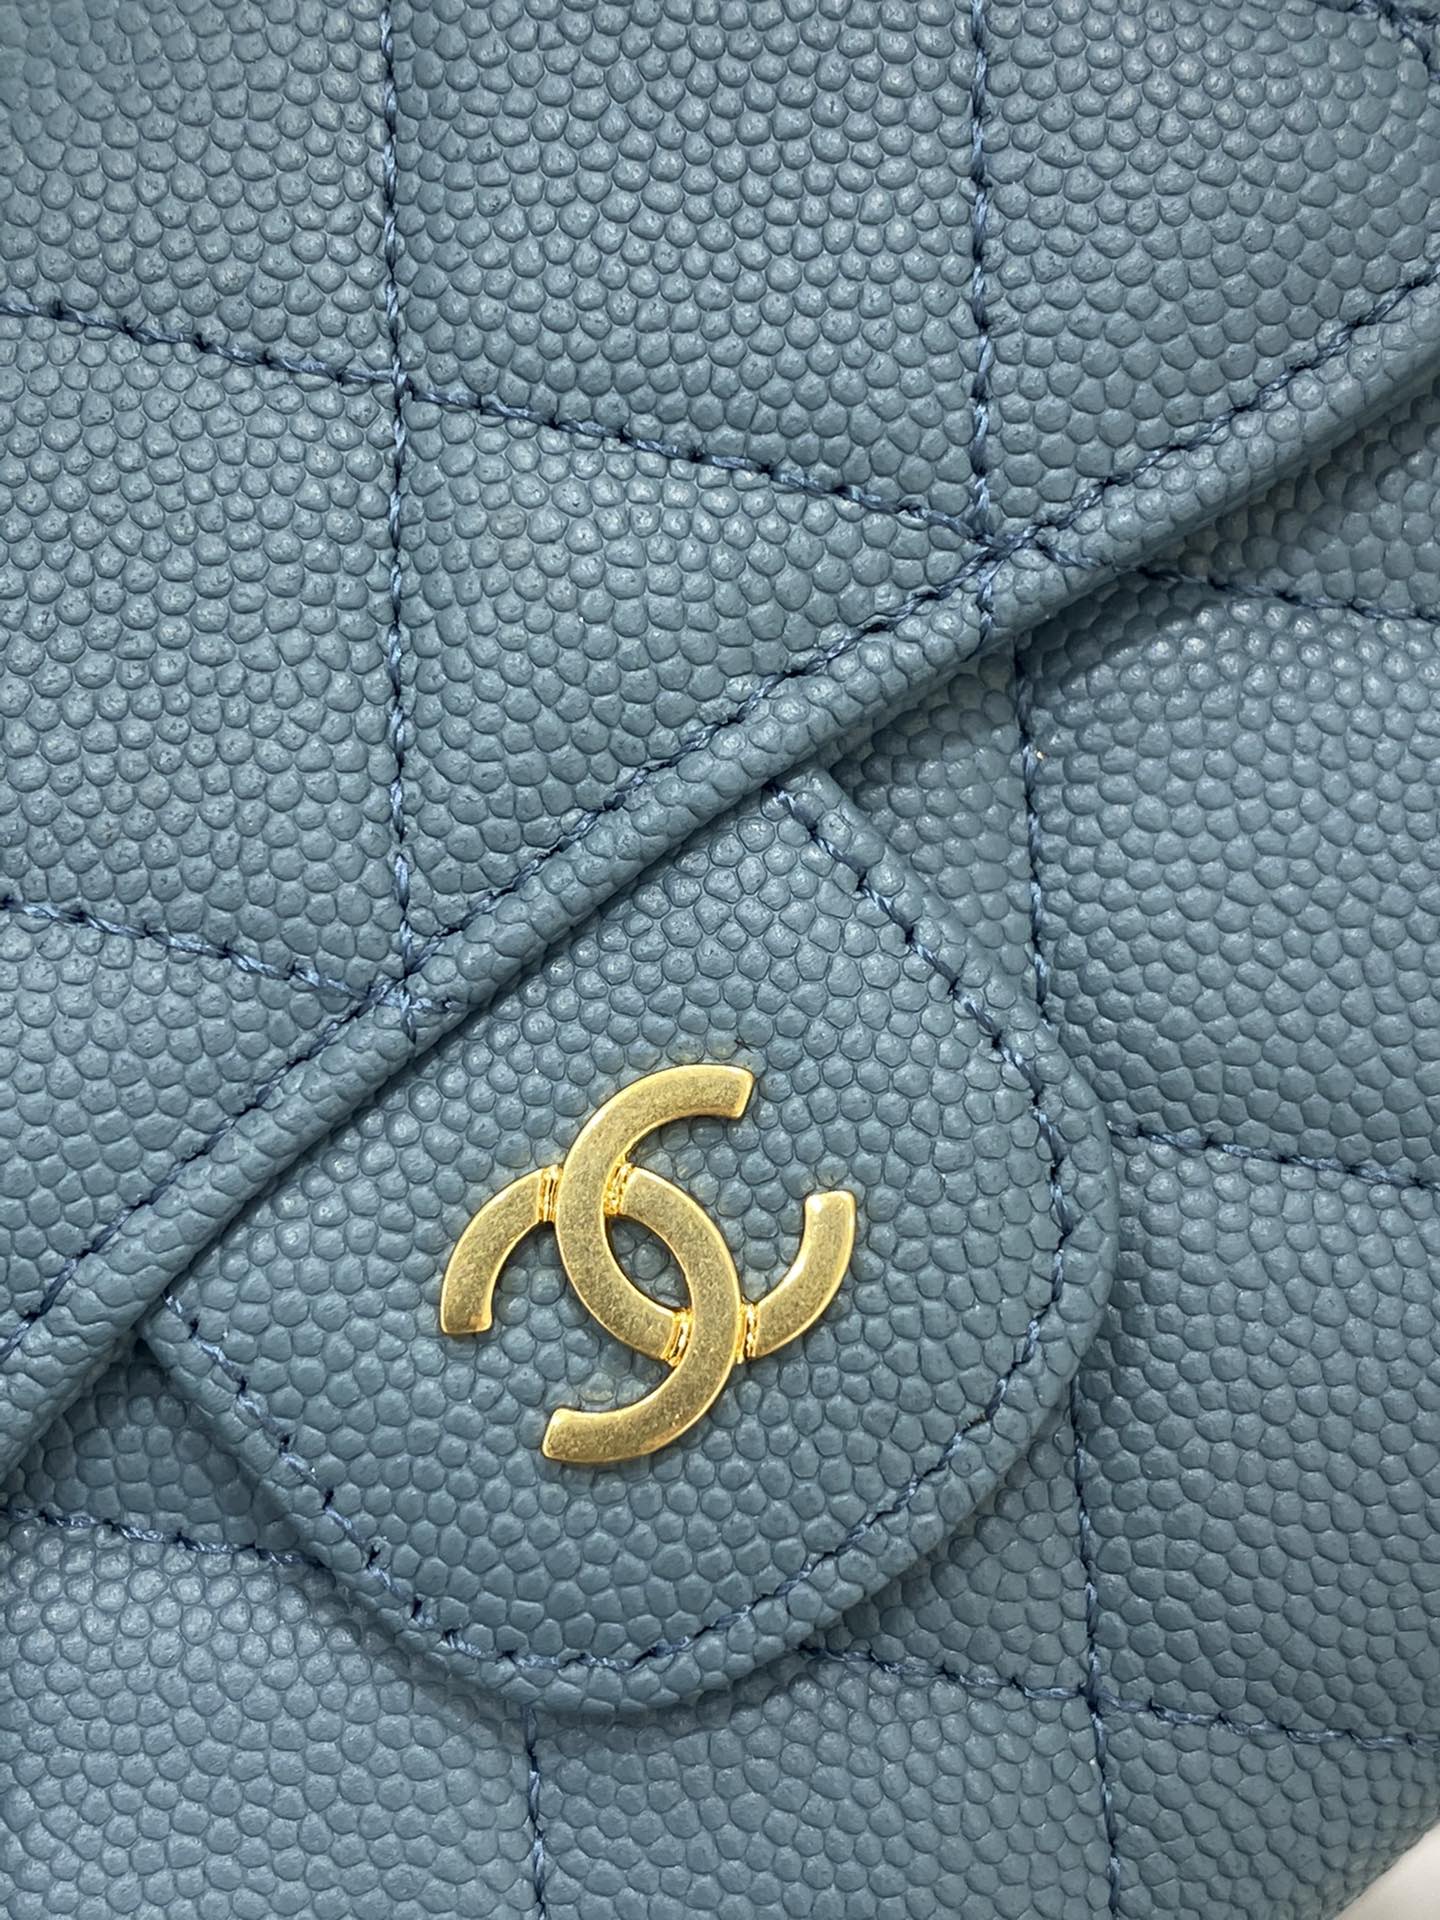 Chanel CF 经典爆款三折钱夹 高品质 经典菱格纹 里外全皮 蓝色鱼子酱牛皮～金扣 10.5-11.5-3cm